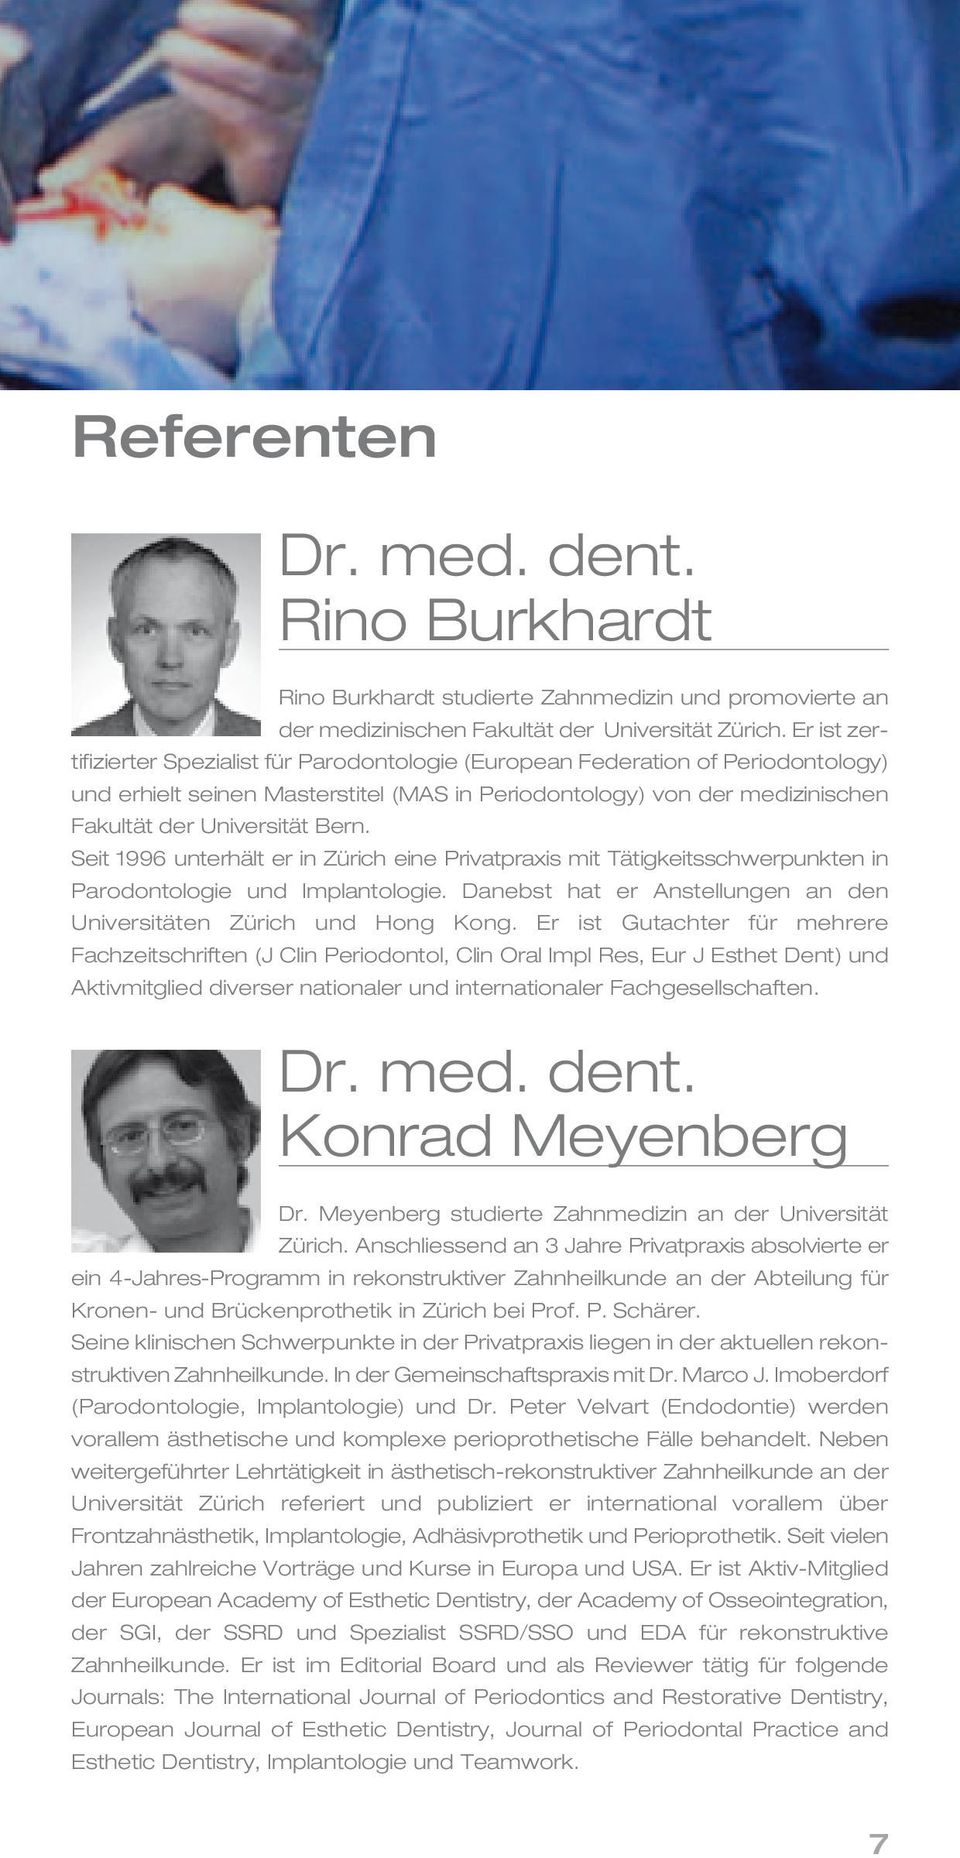 Seit 1996 unterhält er in Zürich eine Privatpraxis mit Tätig keitsschwerpunkten in Parodontologie und Implantologie. Danebst hat er Anstellungen an den Universitäten Zürich und Hong Kong.